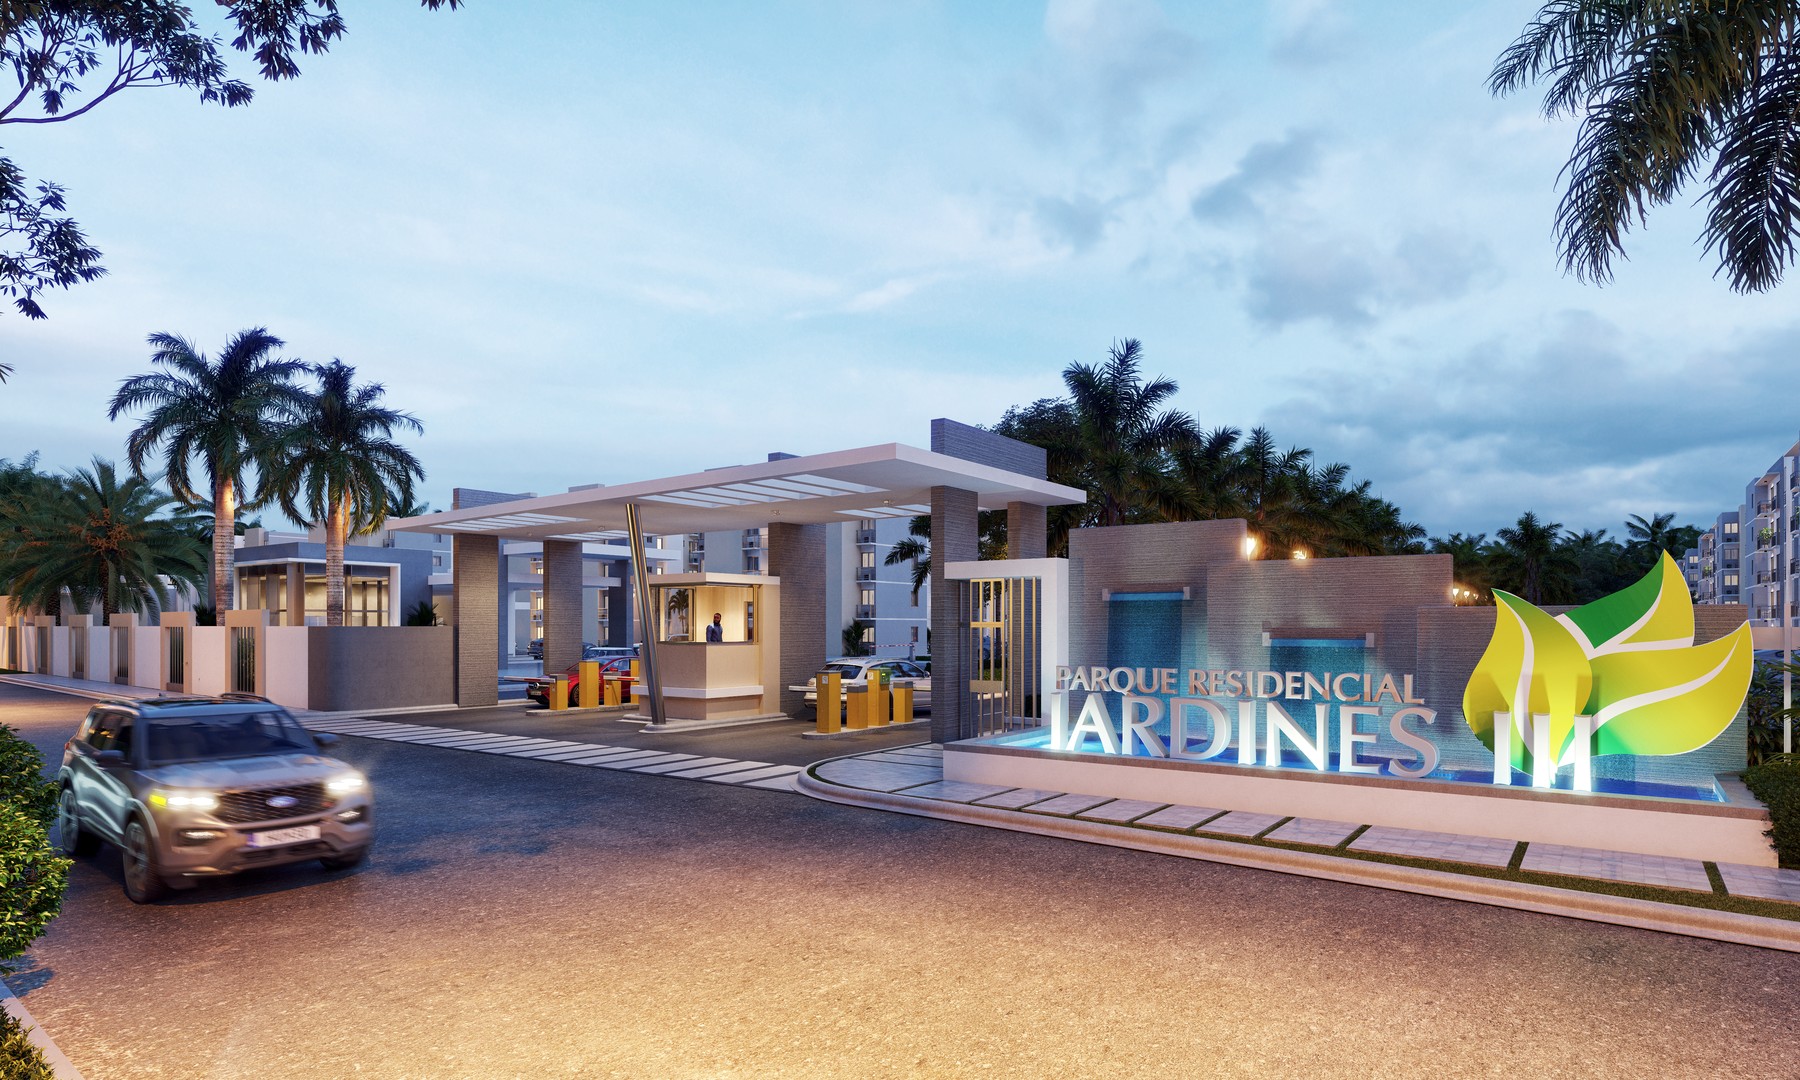 apartamentos - ¿Deseas vivir o invertir en Punta Cana?
Parque Residencial Jardines III te ofrec